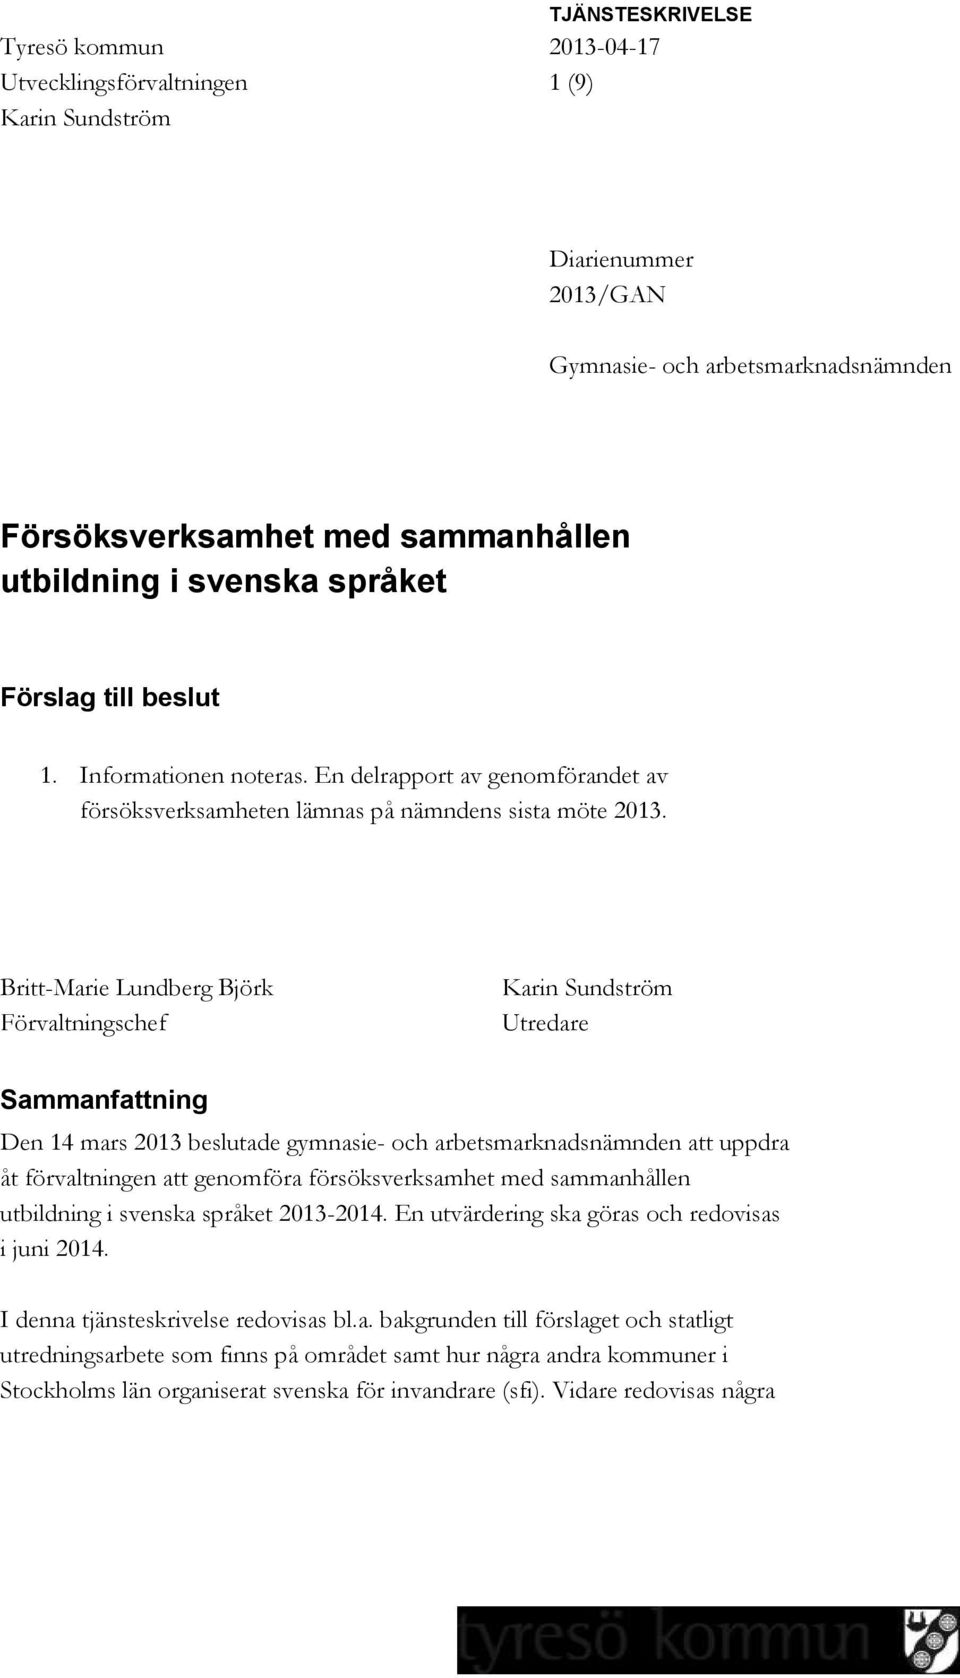 Britt-Marie Lundberg Björk Förvaltningschef Karin Sundström Utredare Sammanfattning Den 14 mars 2013 beslutade gymnasie- och arbetsmarknadsnämnden att uppdra åt förvaltningen att genomföra